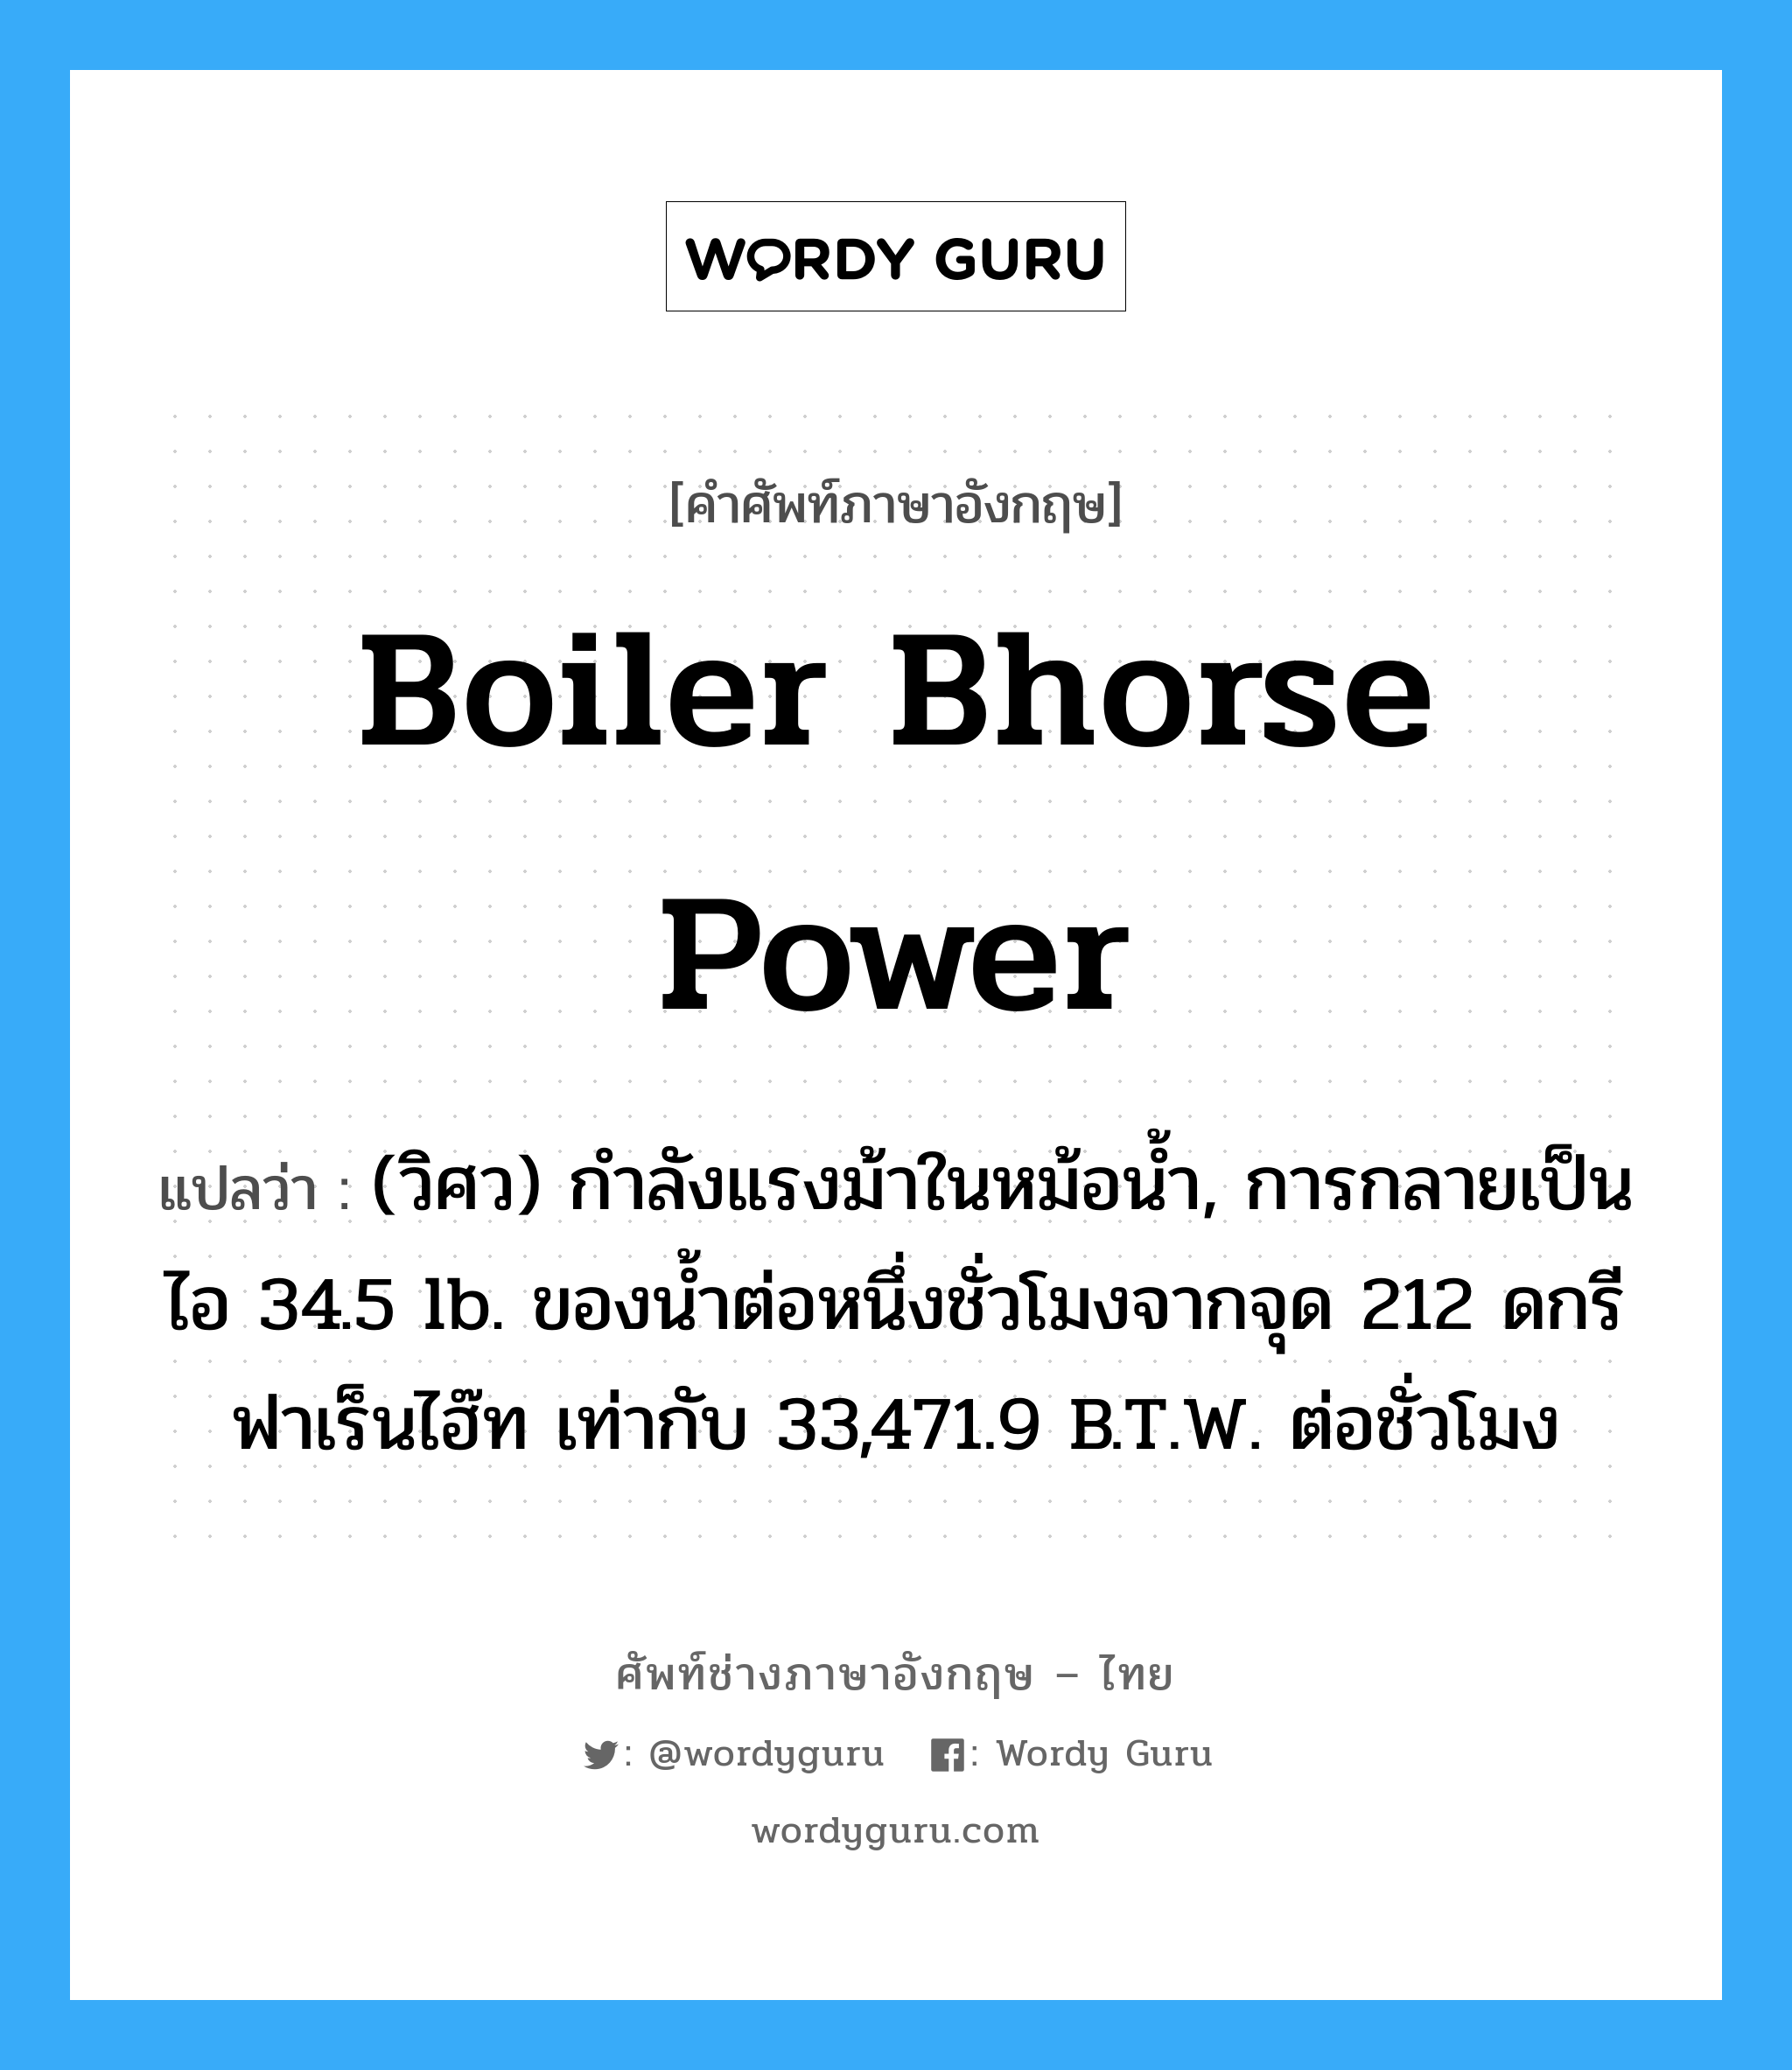 boiler bhorse power แปลว่า?, คำศัพท์ช่างภาษาอังกฤษ - ไทย boiler bhorse power คำศัพท์ภาษาอังกฤษ boiler bhorse power แปลว่า (วิศว) กำลังแรงม้าในหม้อน้ำ, การกลายเป็นไอ 34.5 lb. ของน้ำต่อหนึ่งชั่วโมงจากจุด 212 ดกรีฟาเร็นไฮ๊ท เท่ากับ 33,471.9 B.T.W. ต่อชั่วโมง